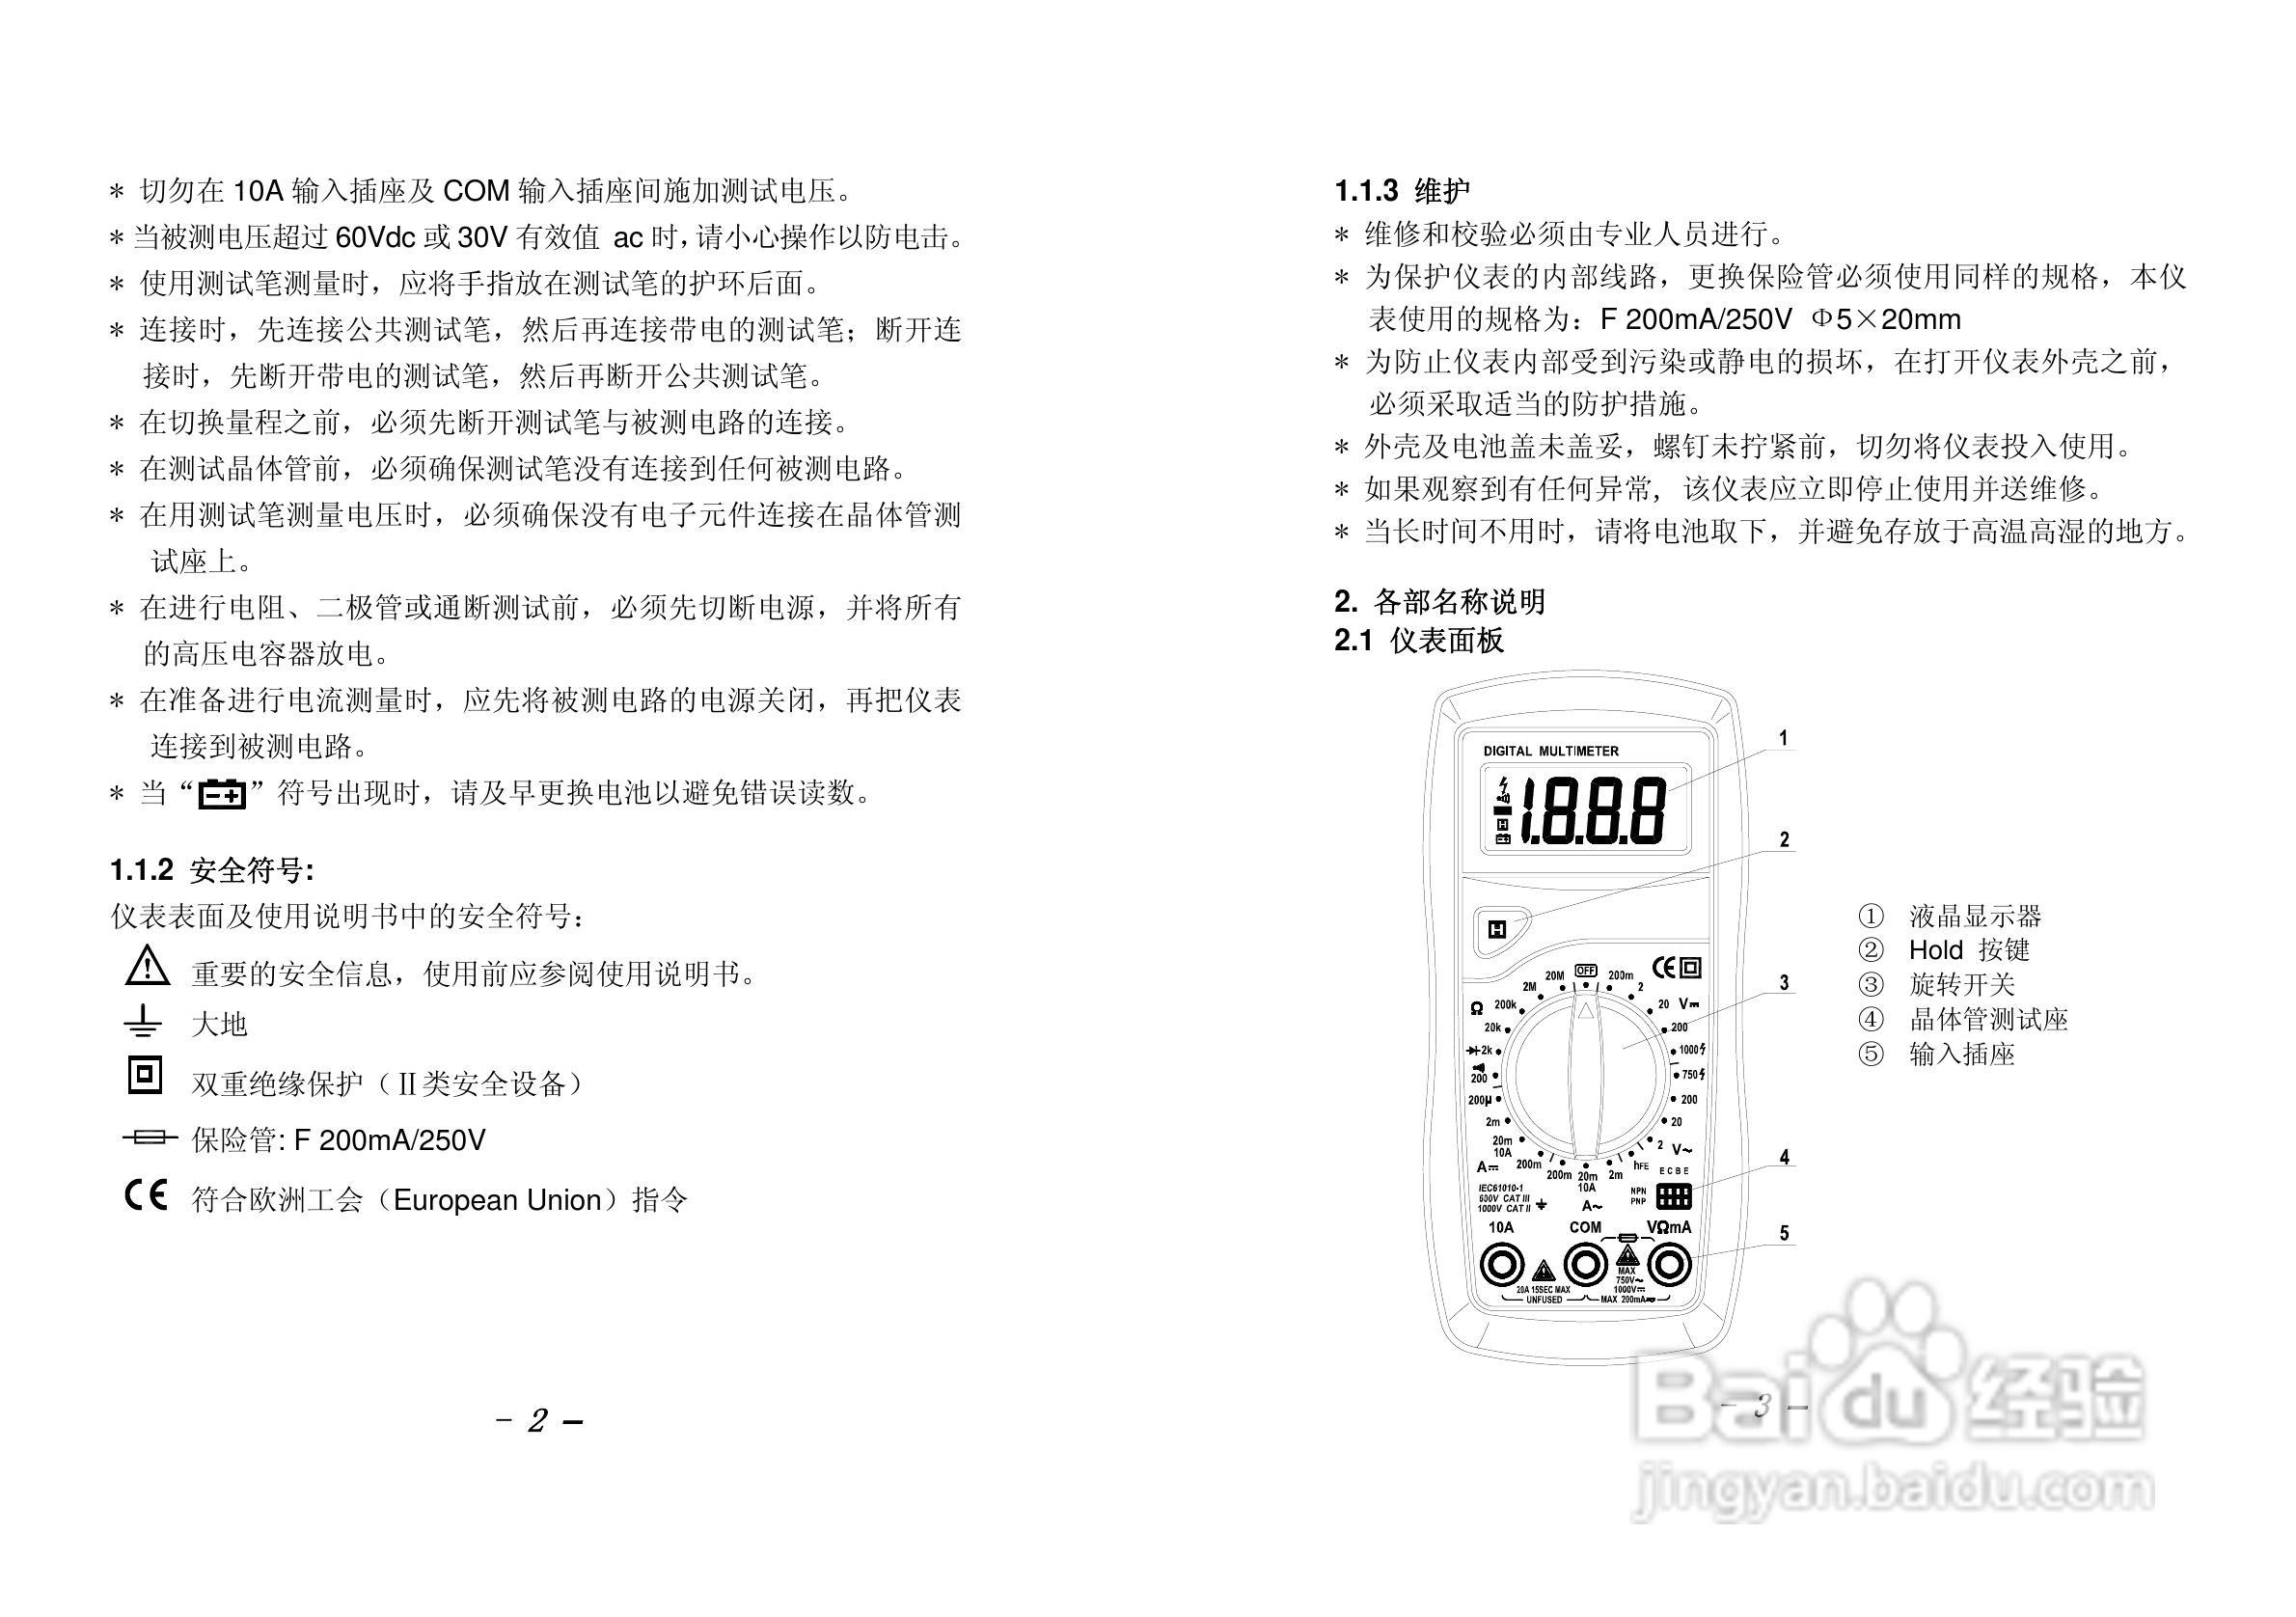 华谊MS8221A 型数字多用表使用说明书-百度经验